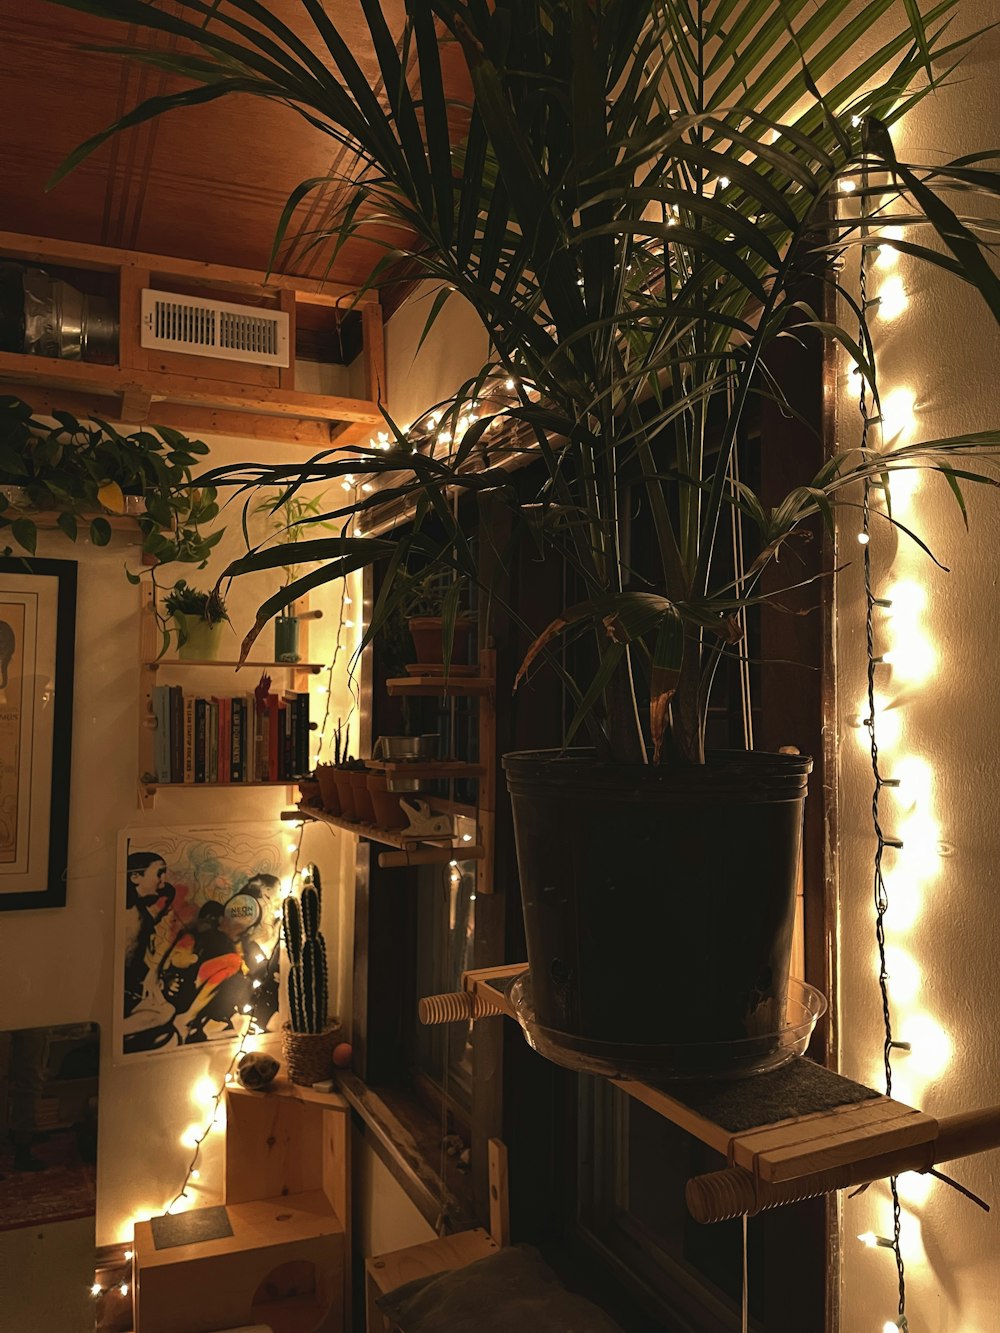 Una planta en maceta sentada encima de un estante de madera